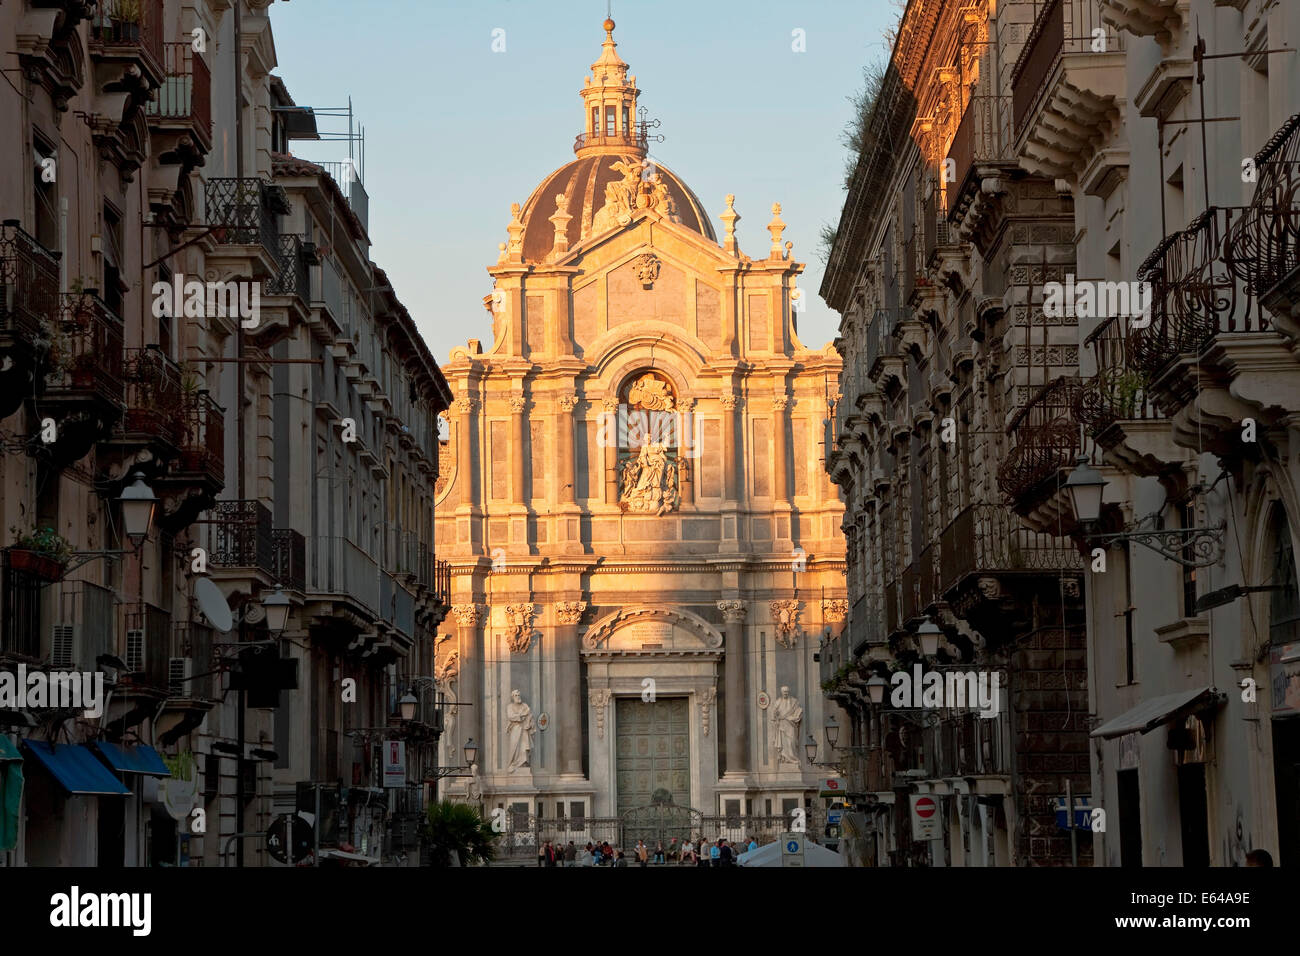 Vue extérieure de la cathédrale Sant Agata, Catane, Sicile, Italie Banque D'Images